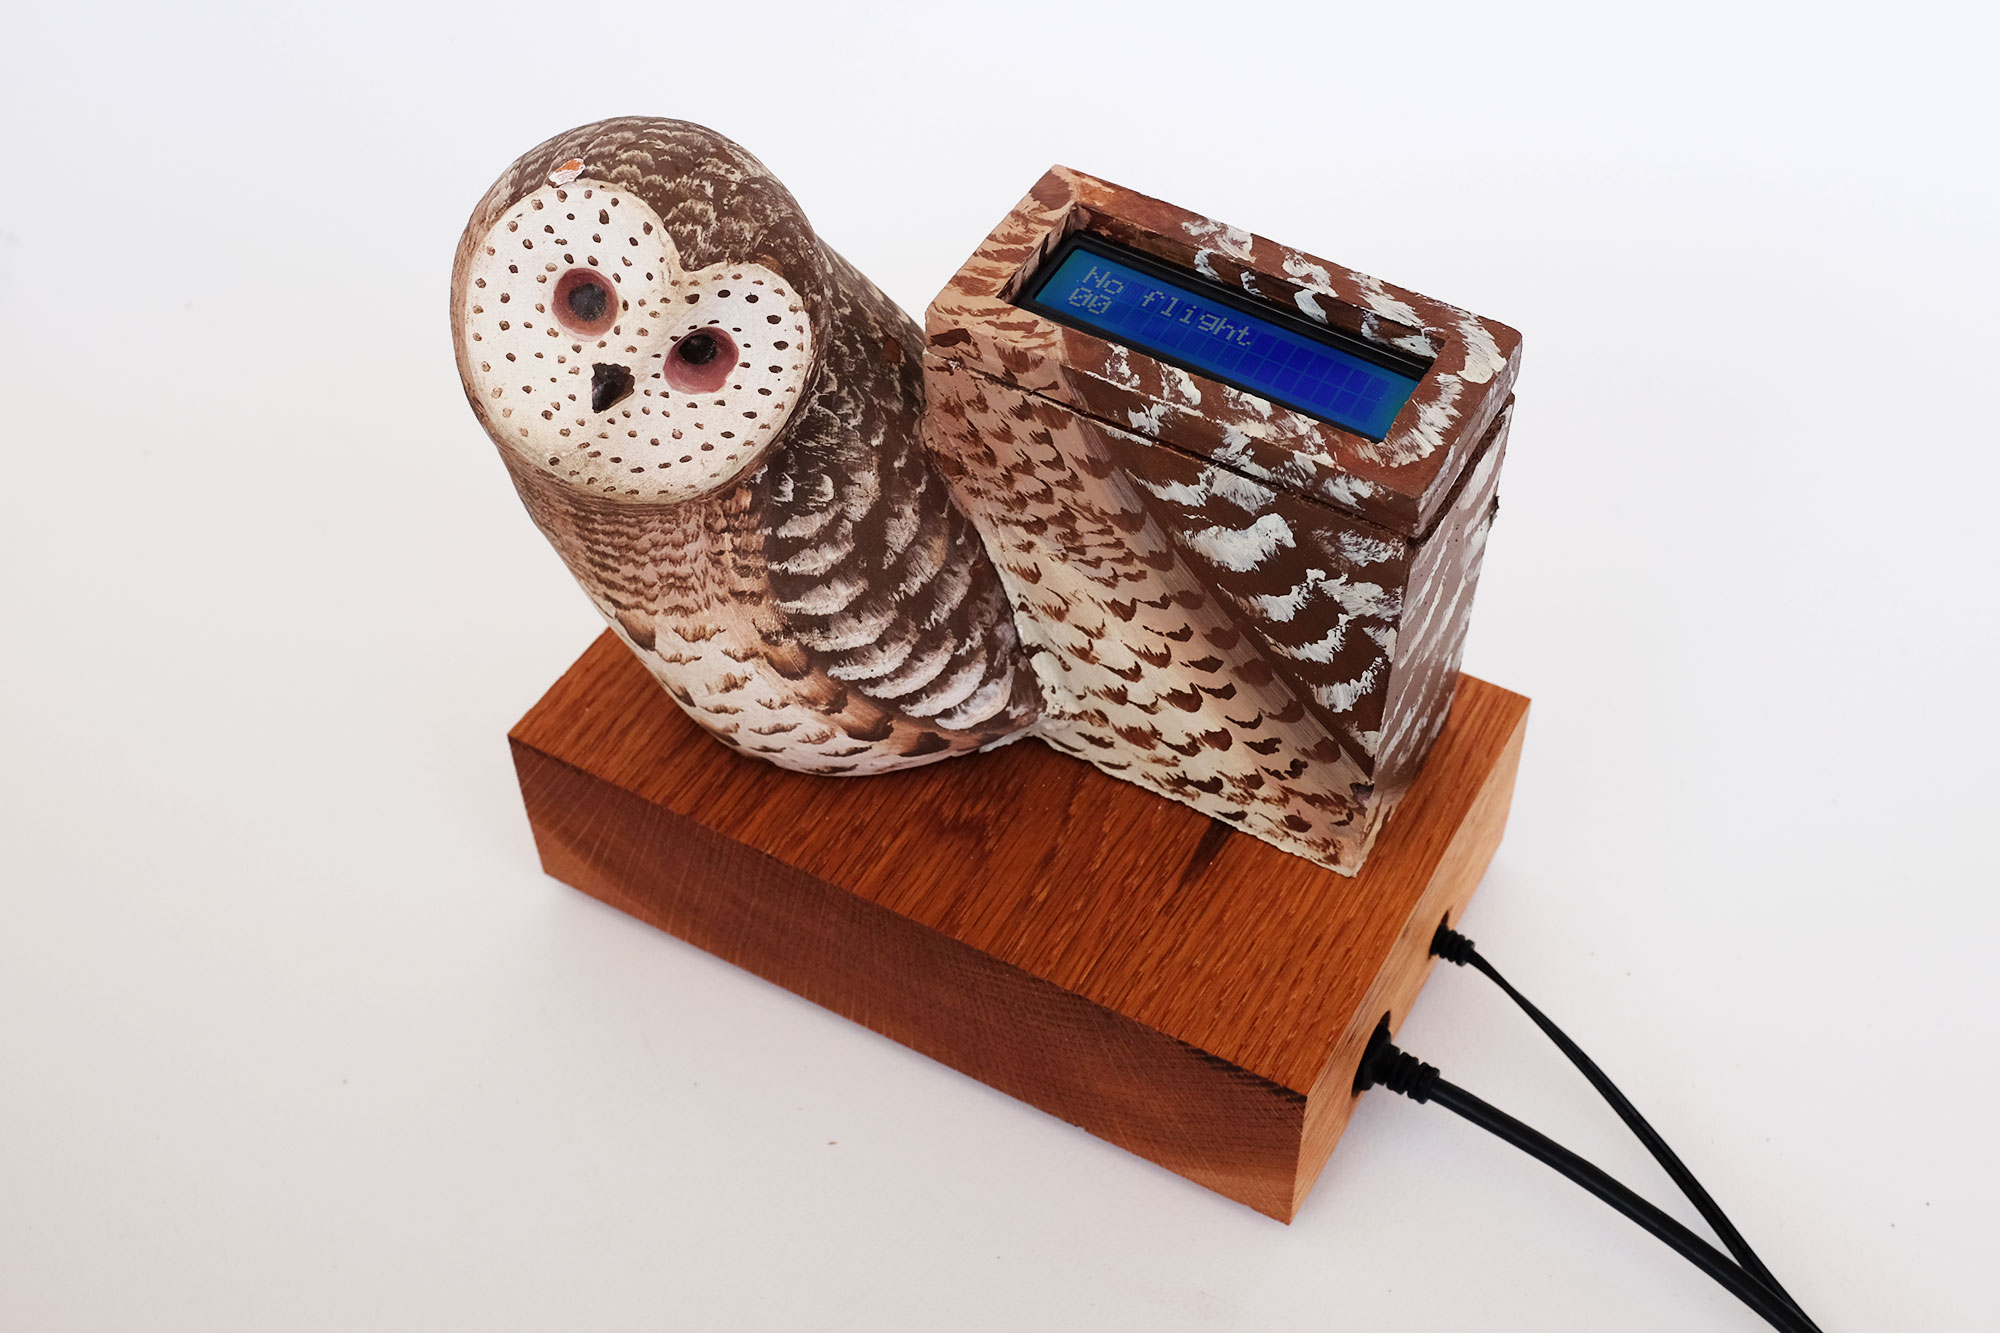 a sculpture of an owl on a wooden base. an augmented screen reads: no flight